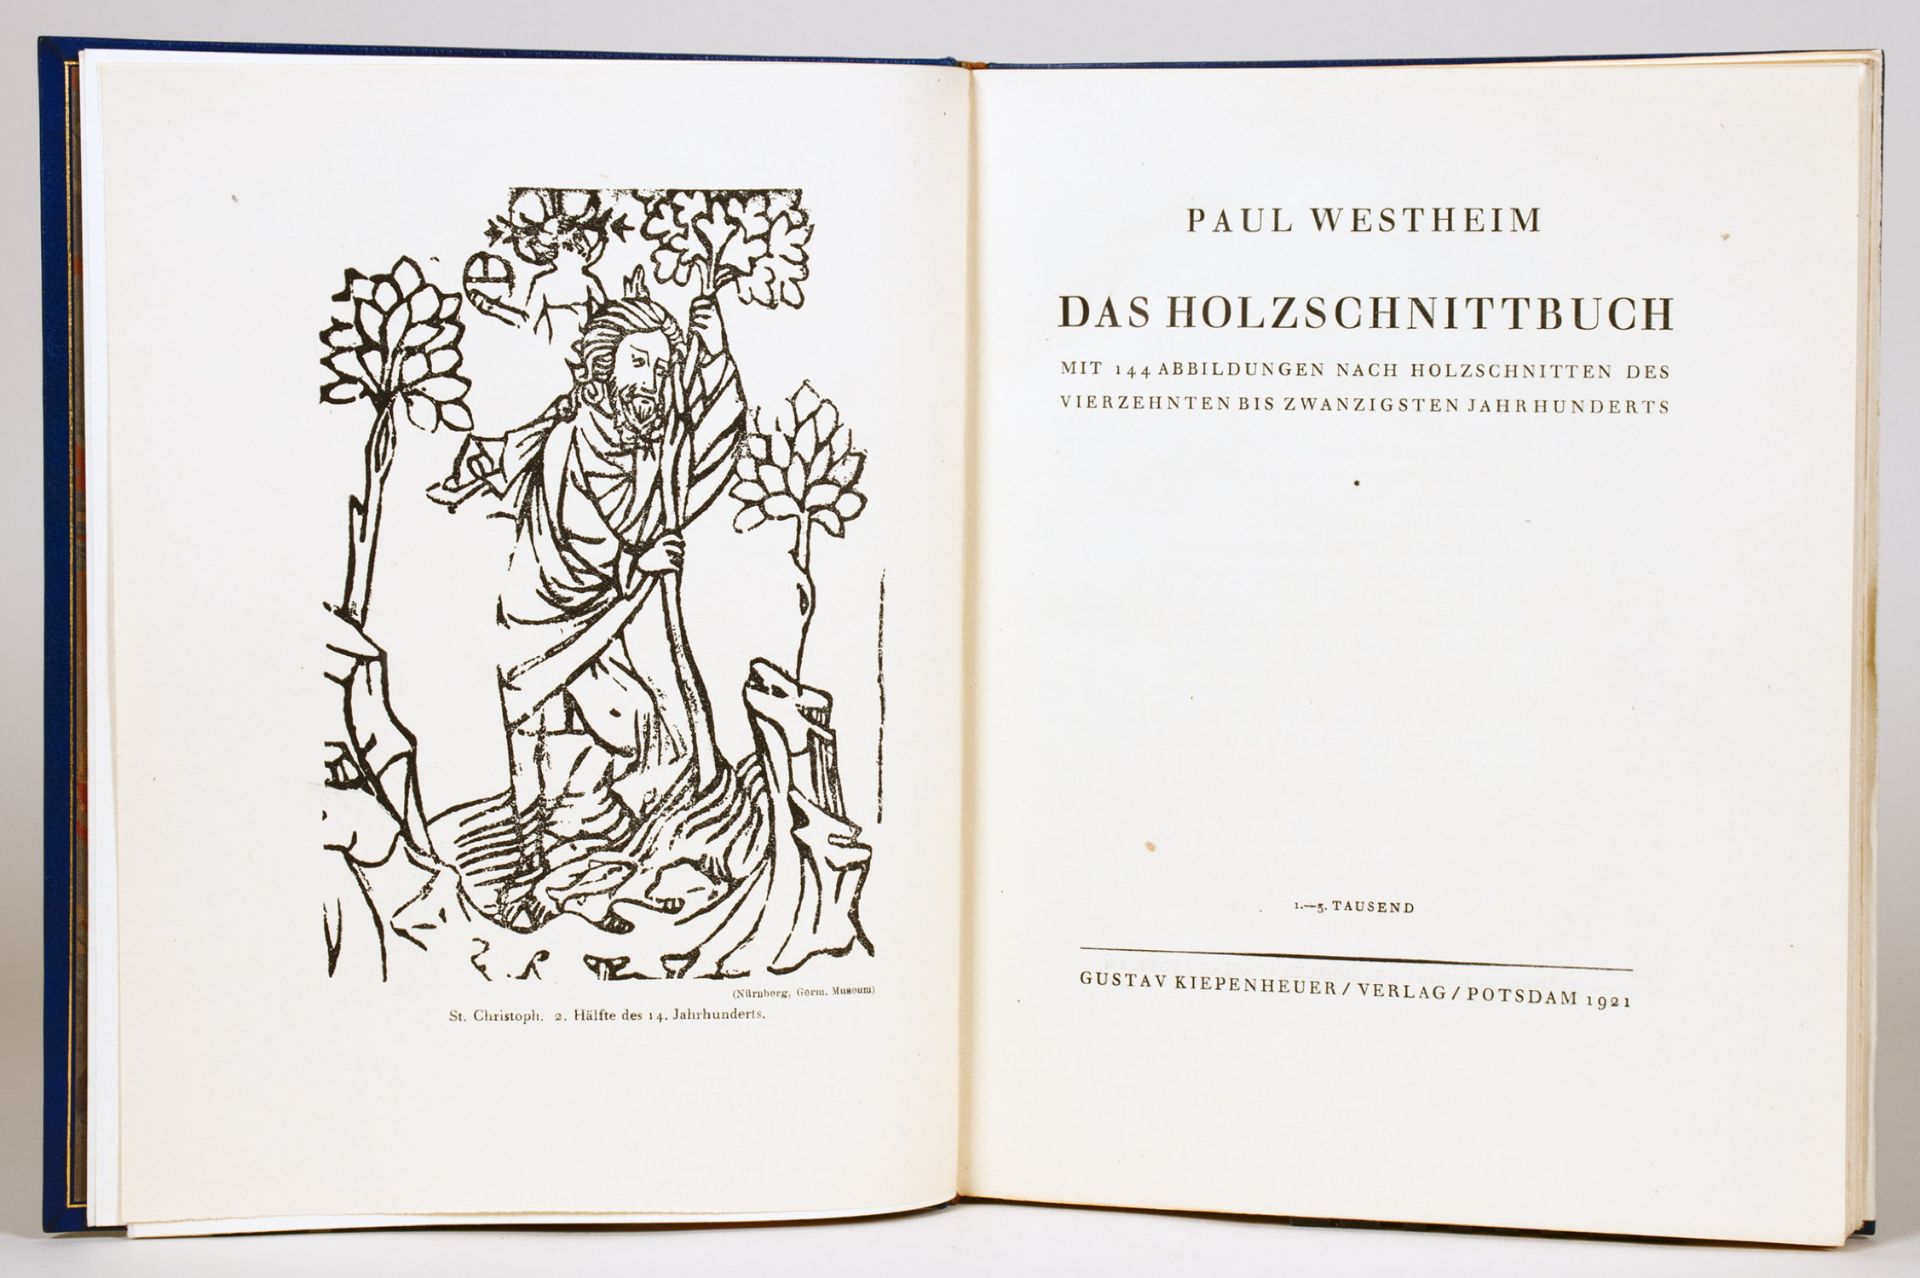 Einbände - Blauer Maroquinband von Otto Dorfner, Weimar (signiert), mit Vergoldung. - Bild 2 aus 2